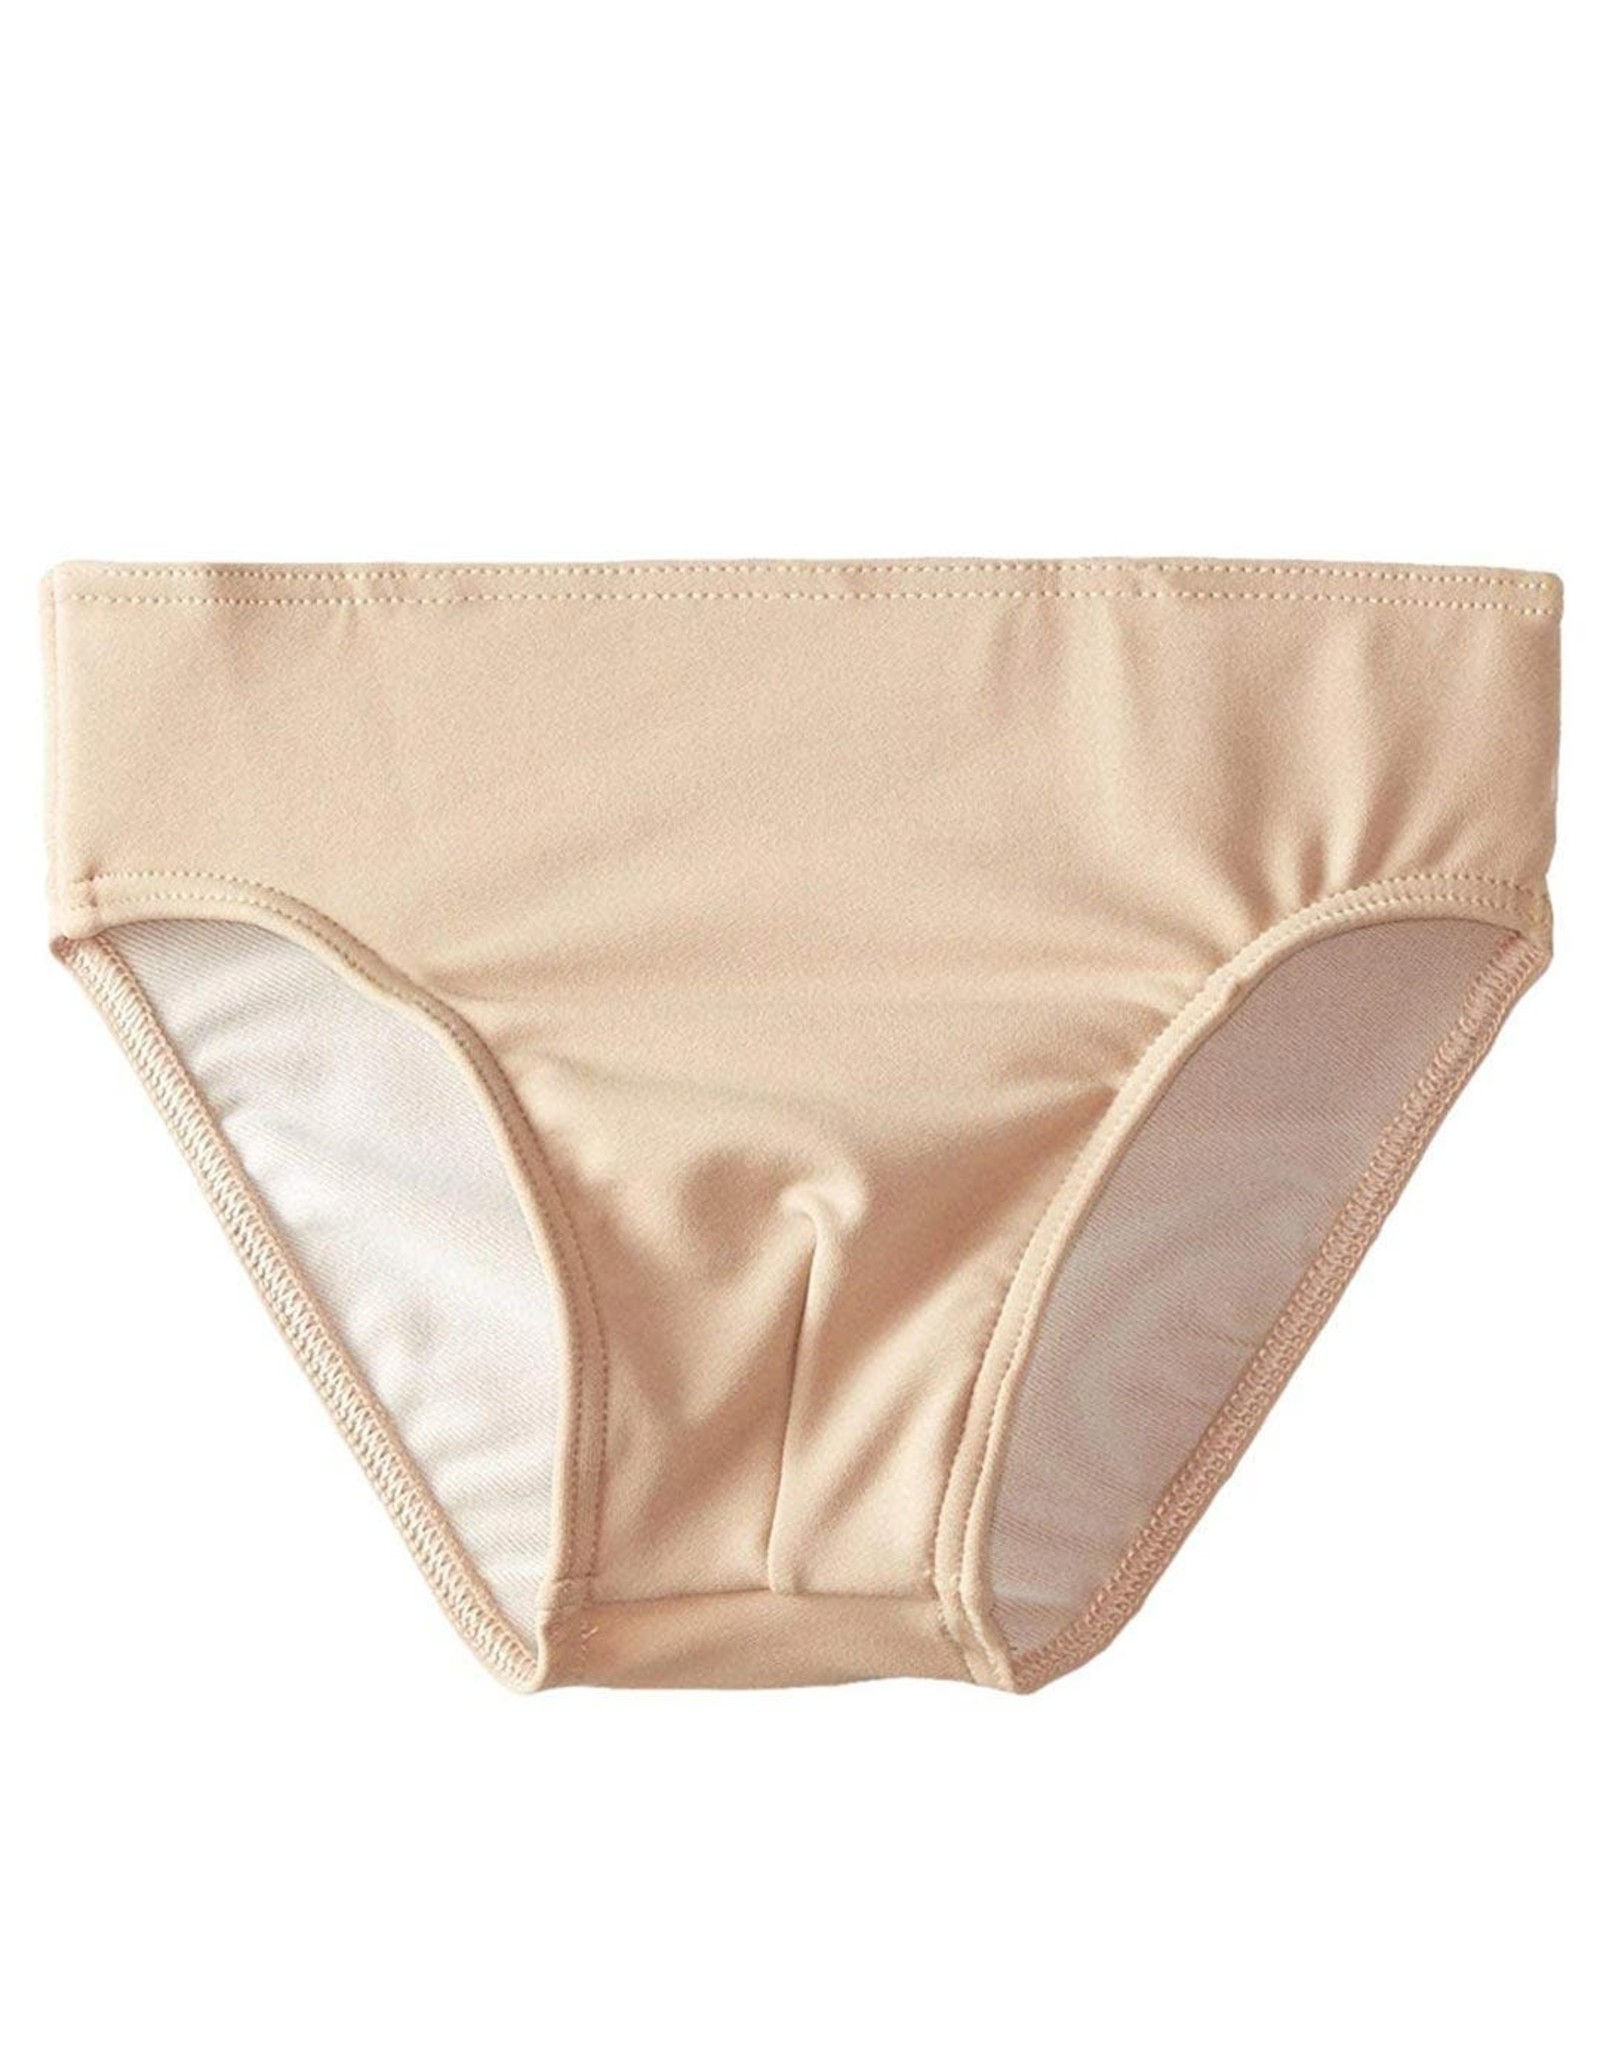 Spandex Ballet Dance Underwear  Nylon Ballet Dance Underwear